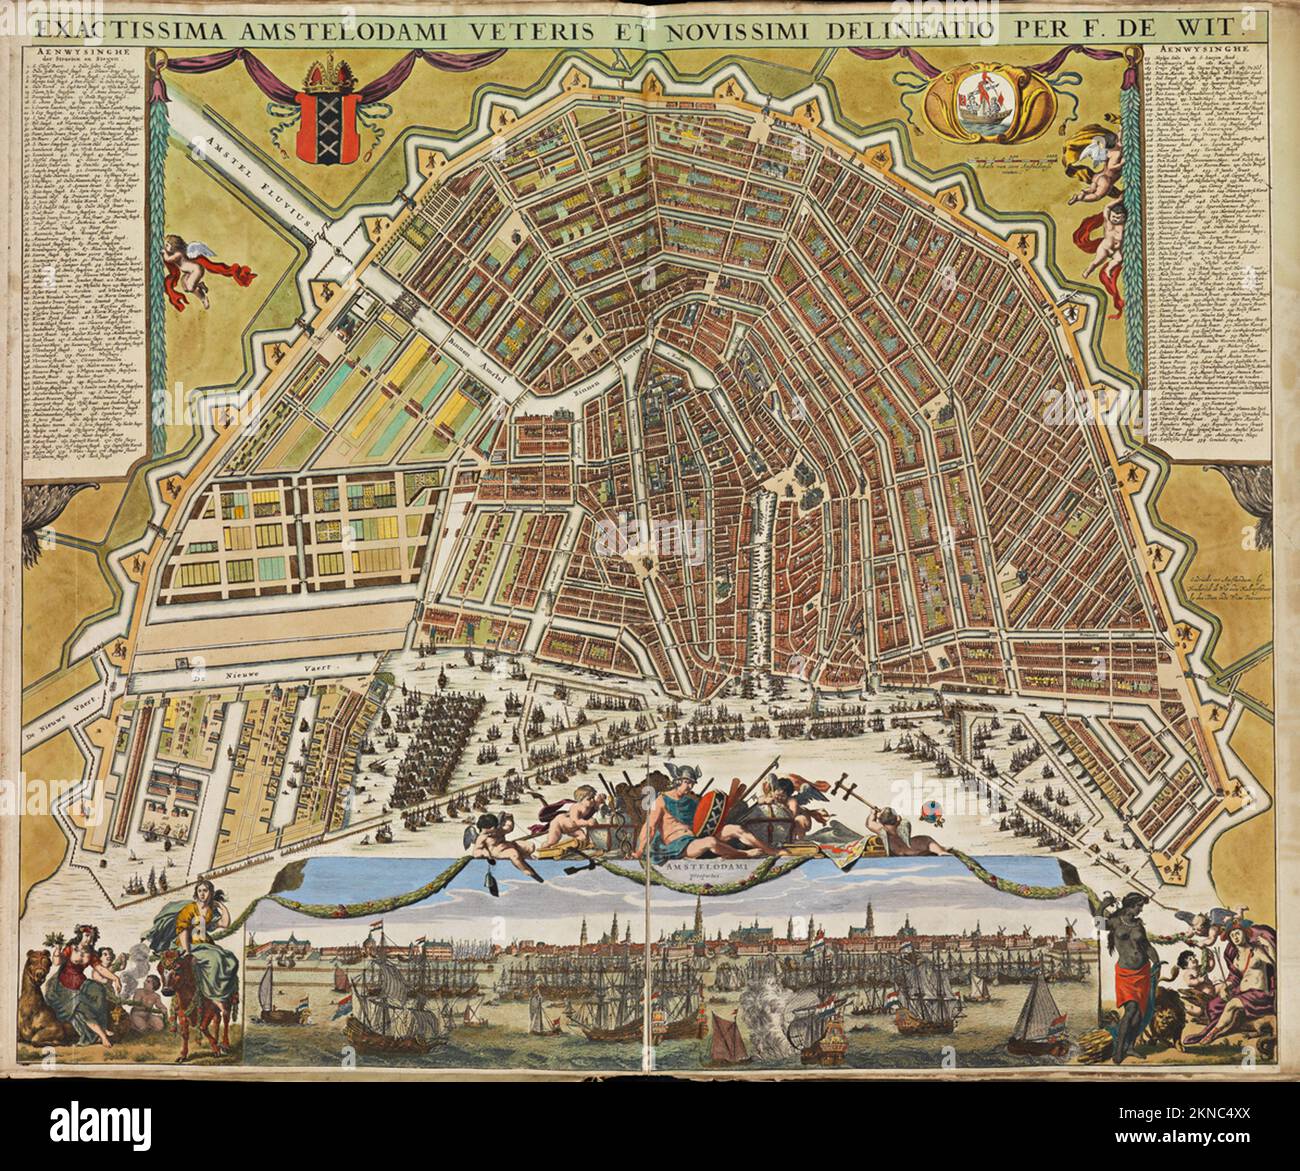 Plan de ville d'Amsterdam et de la région autour de lui de 16th-18th siècle. Les cartes sont magnifiquement illustrées à la main et gravées le montrant à l'époque. Banque D'Images